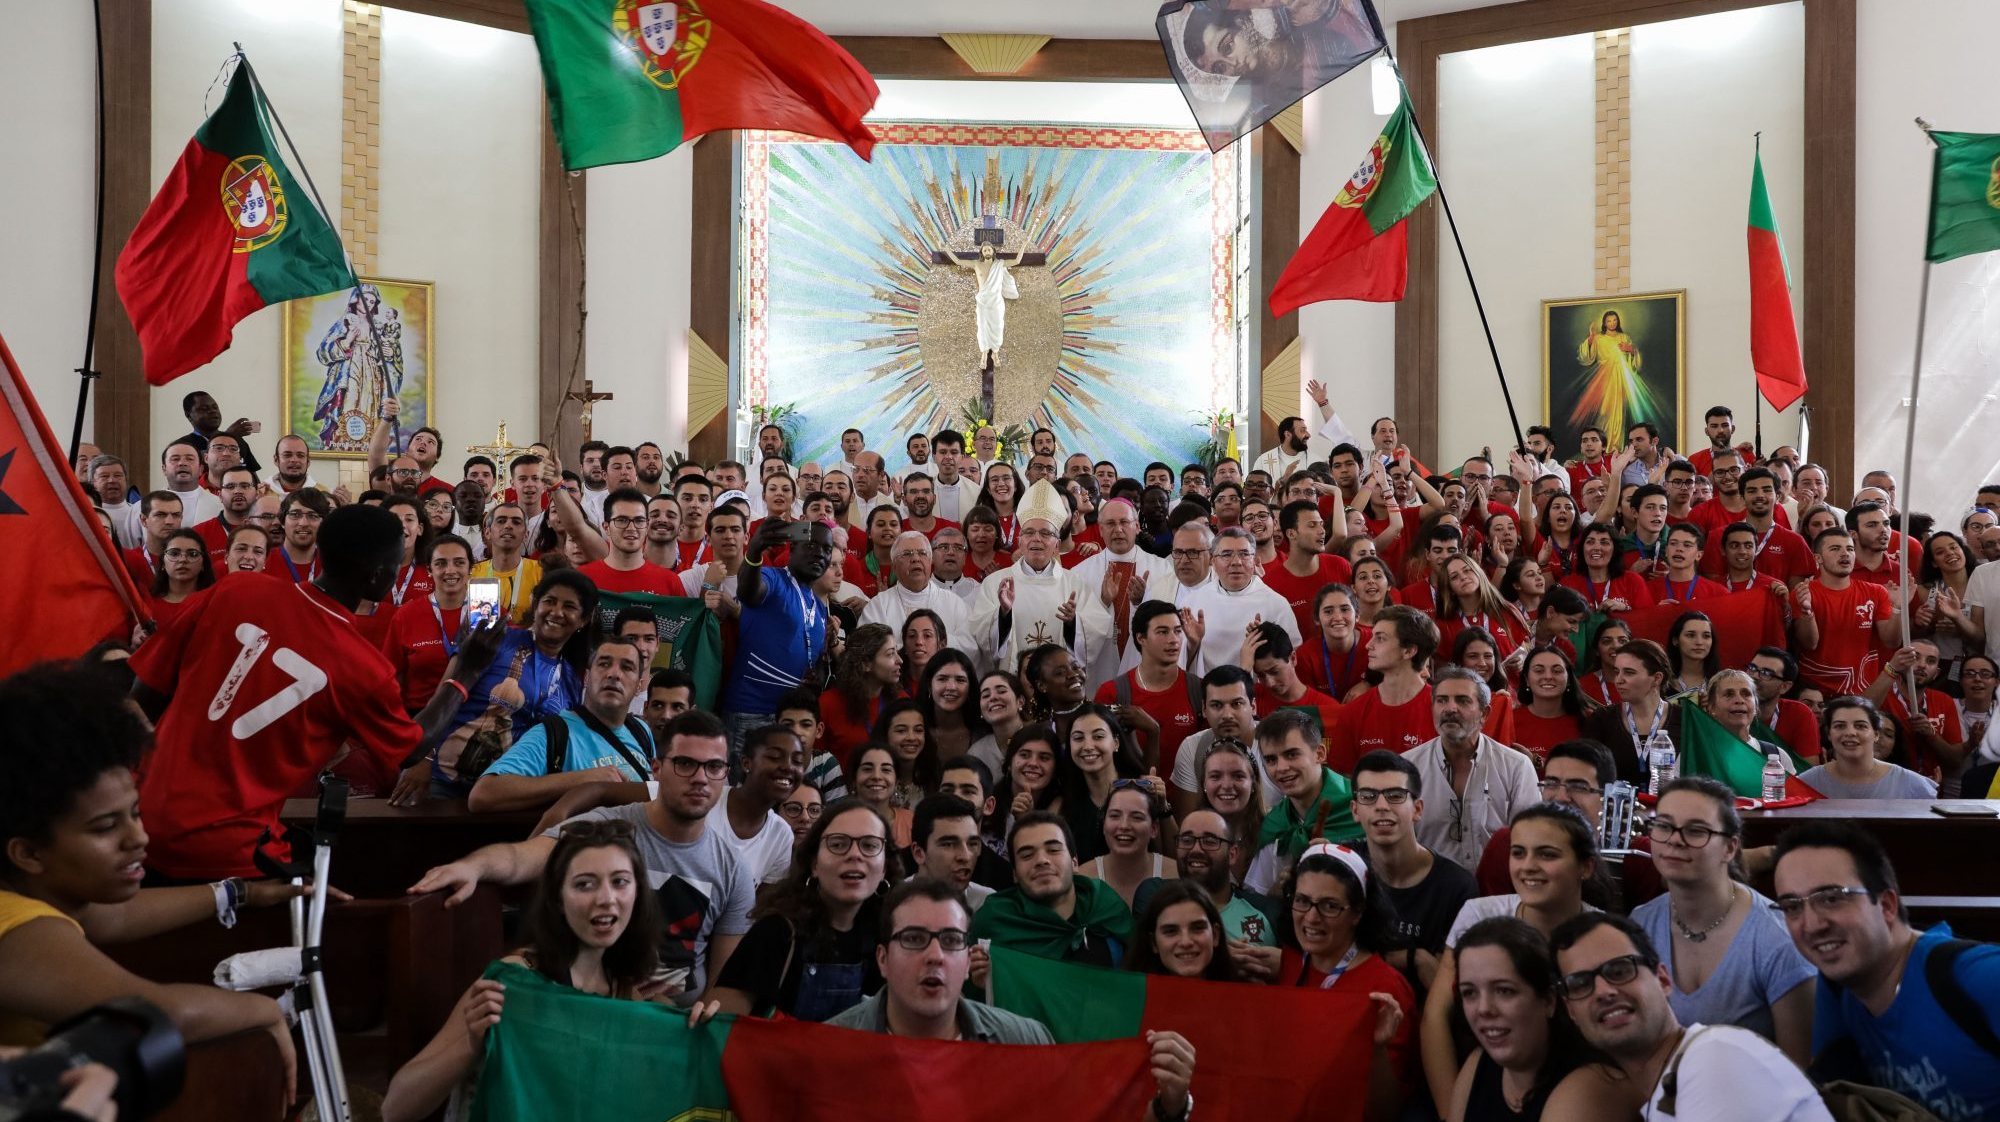 Jovens peregrinos portugueses nas últimas Jornadas Mundiais da Juventude, realizadas em 2019 no Panamá